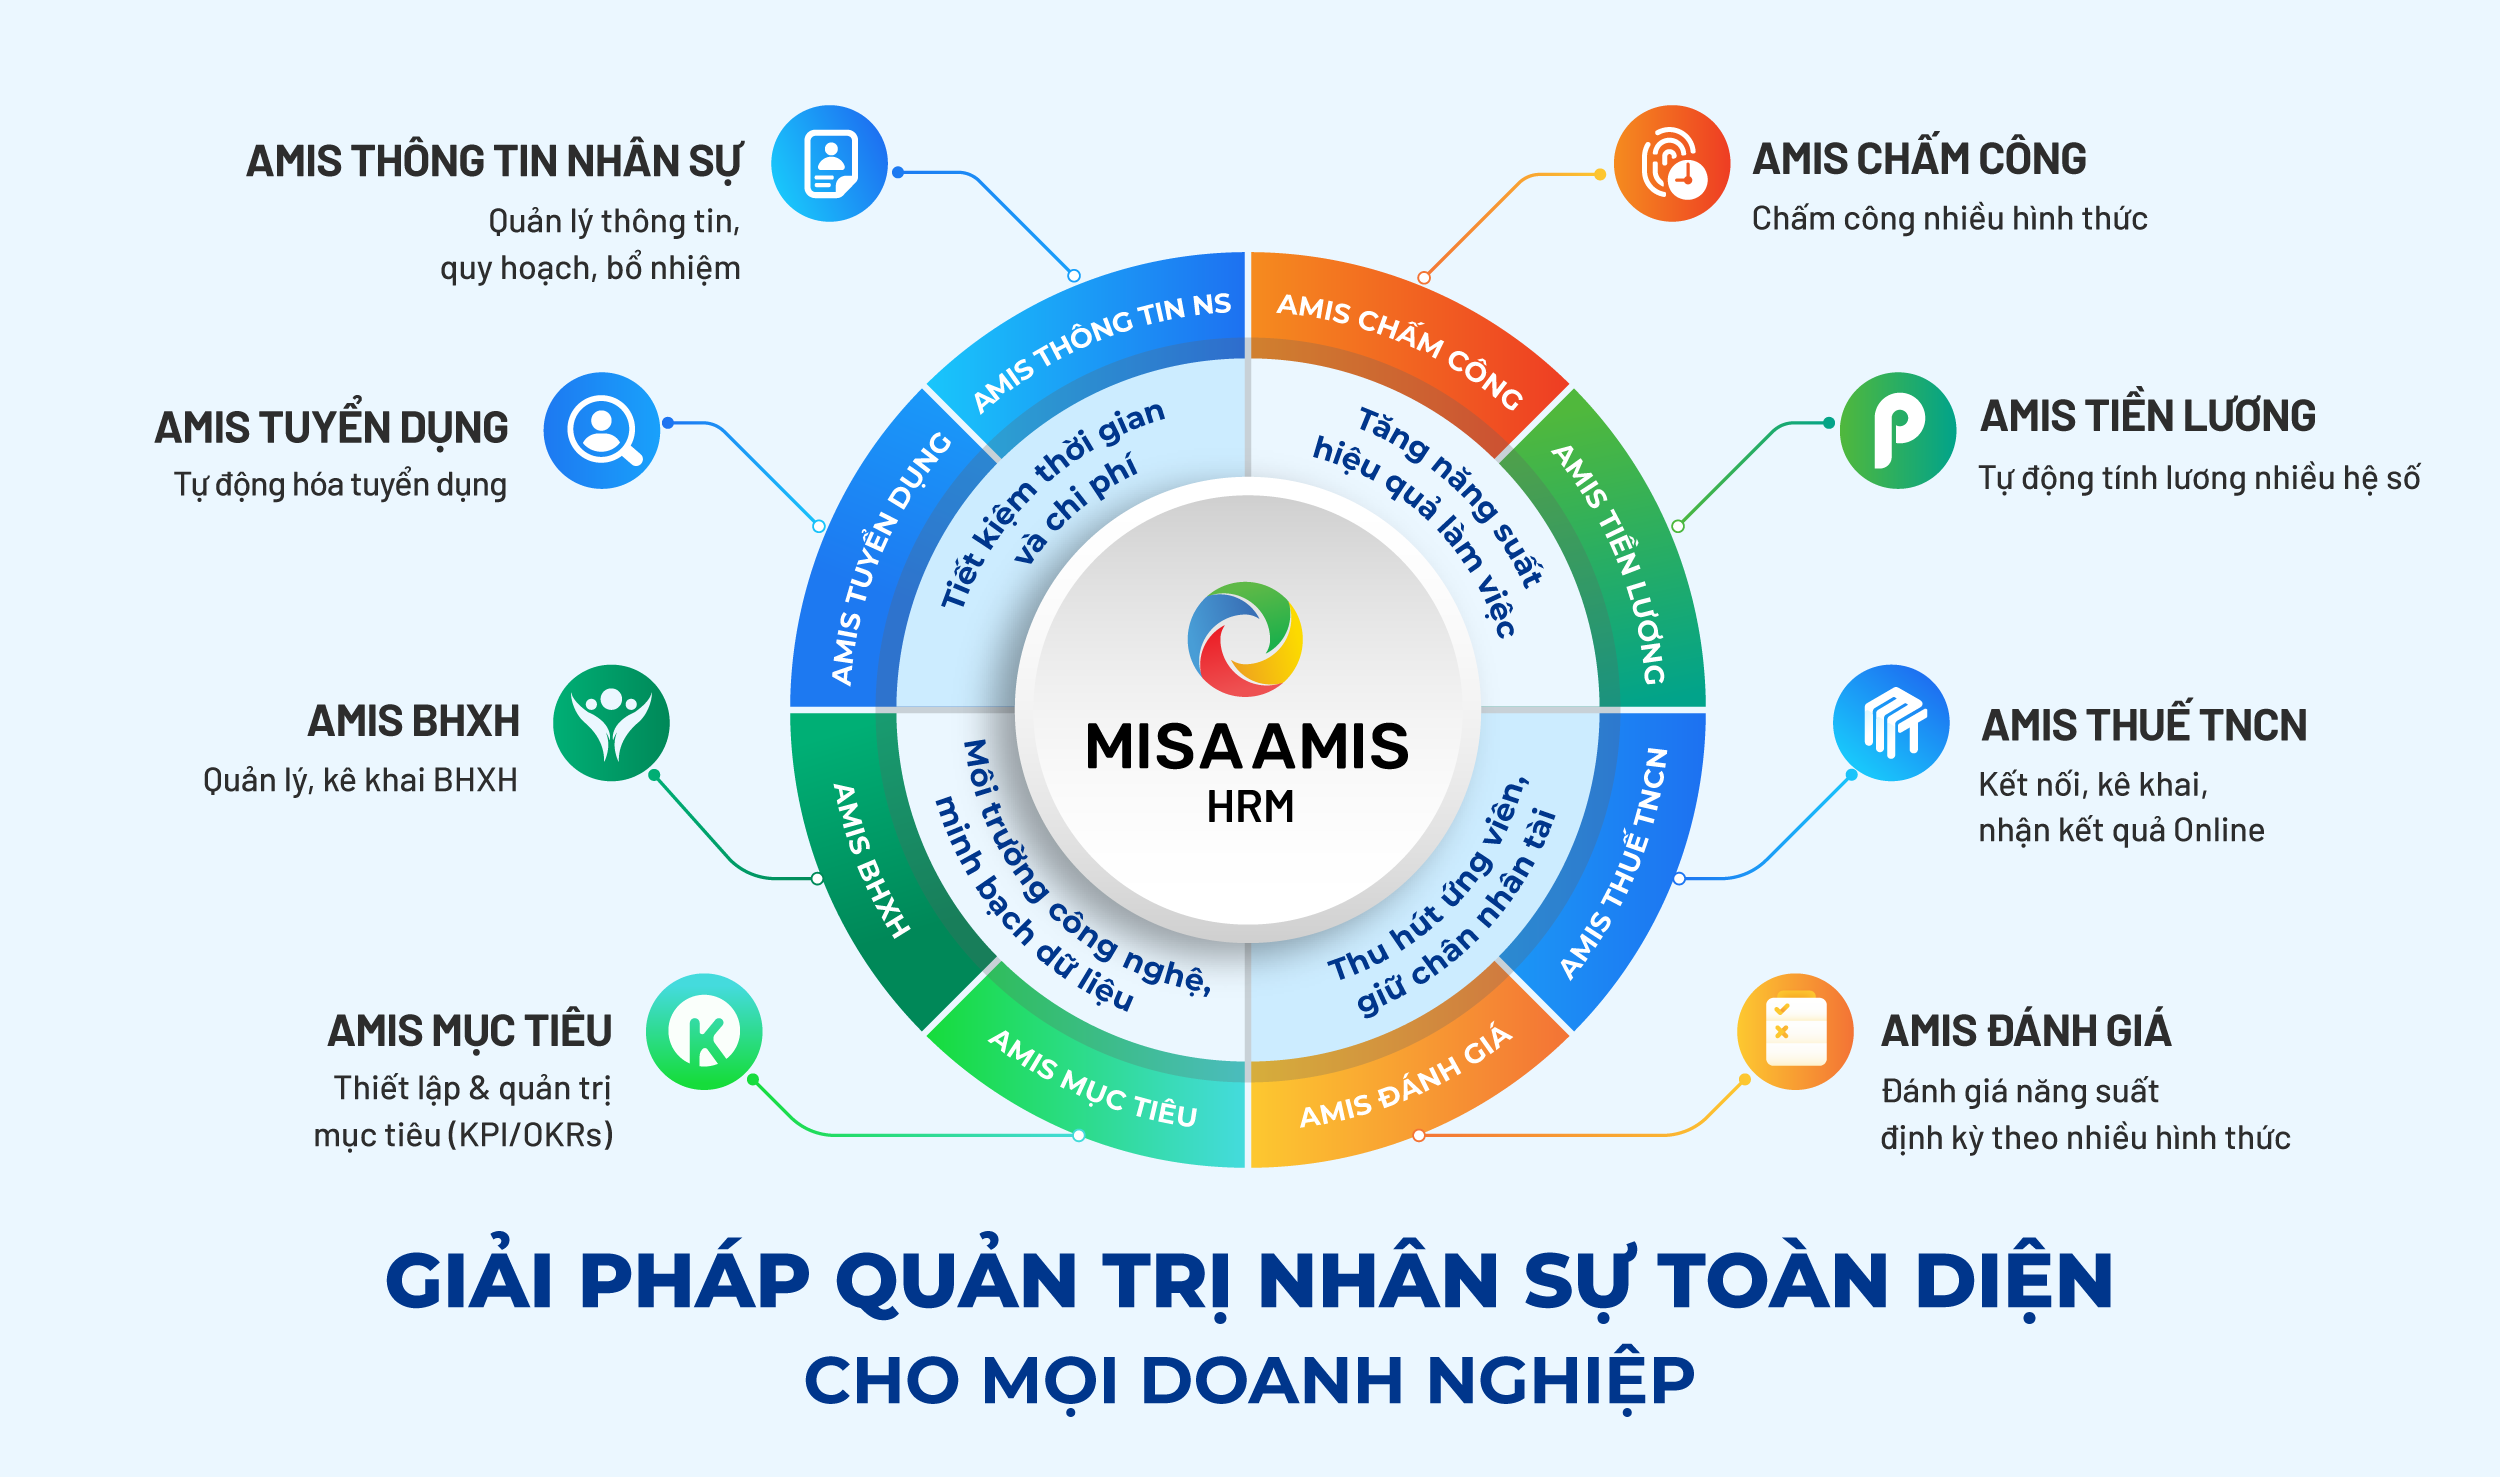 AMIS Tiền lương là phân hệ thuộc phần mềm nhân sự MISA AMIS HRM - Phần mềm phù hợp nhất cho doanh nghiệp trên 100 nhân sự